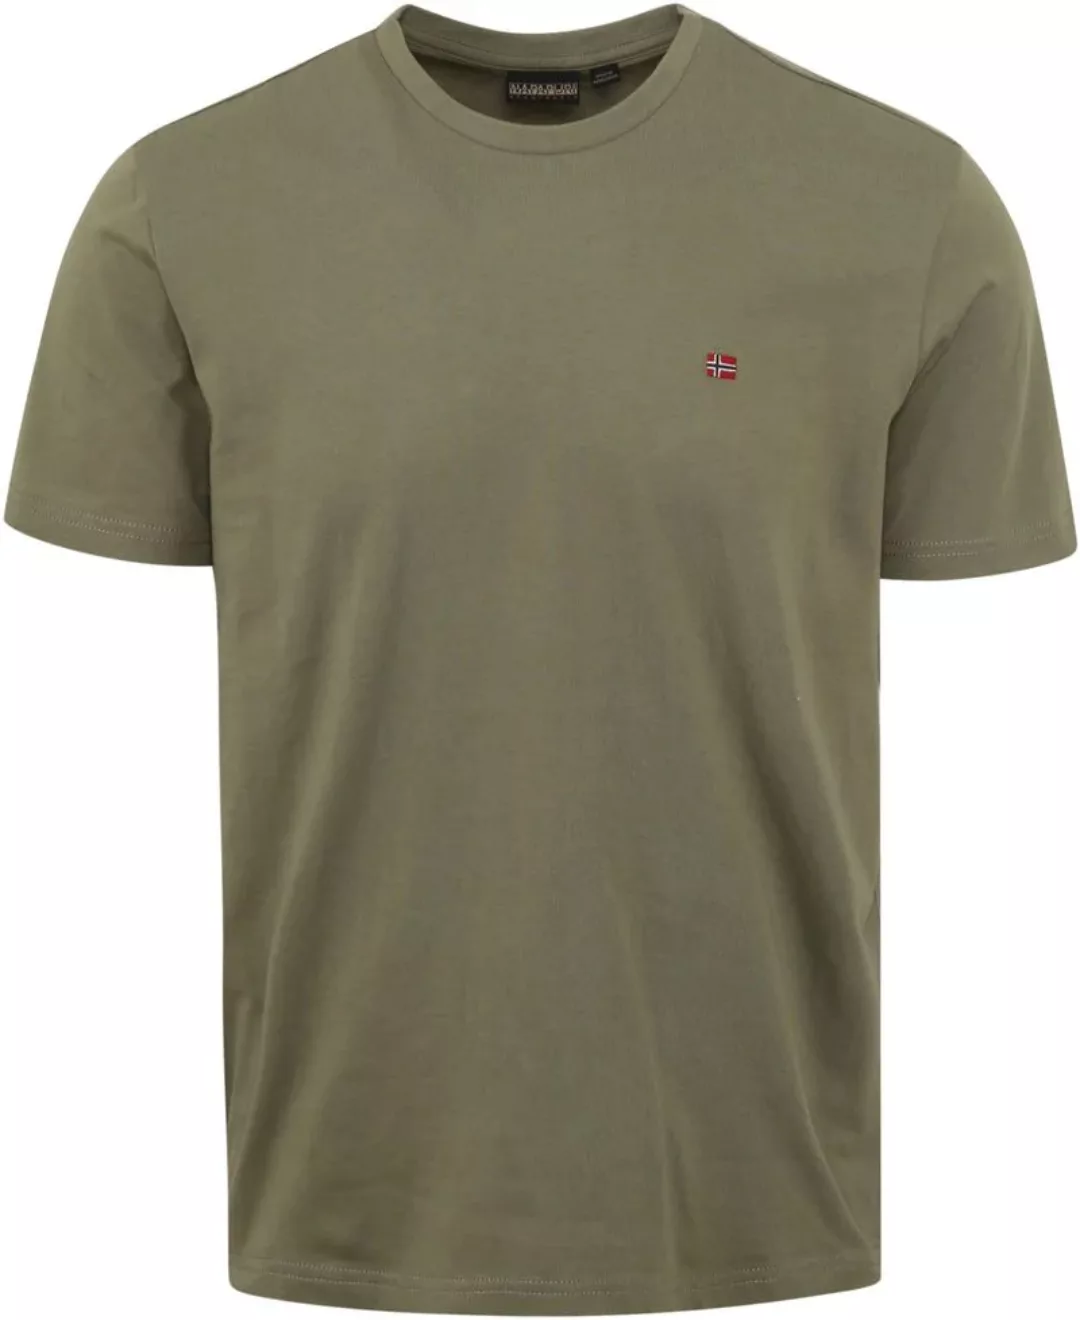 Napapijri Salis T-shirt Grün - Größe S günstig online kaufen